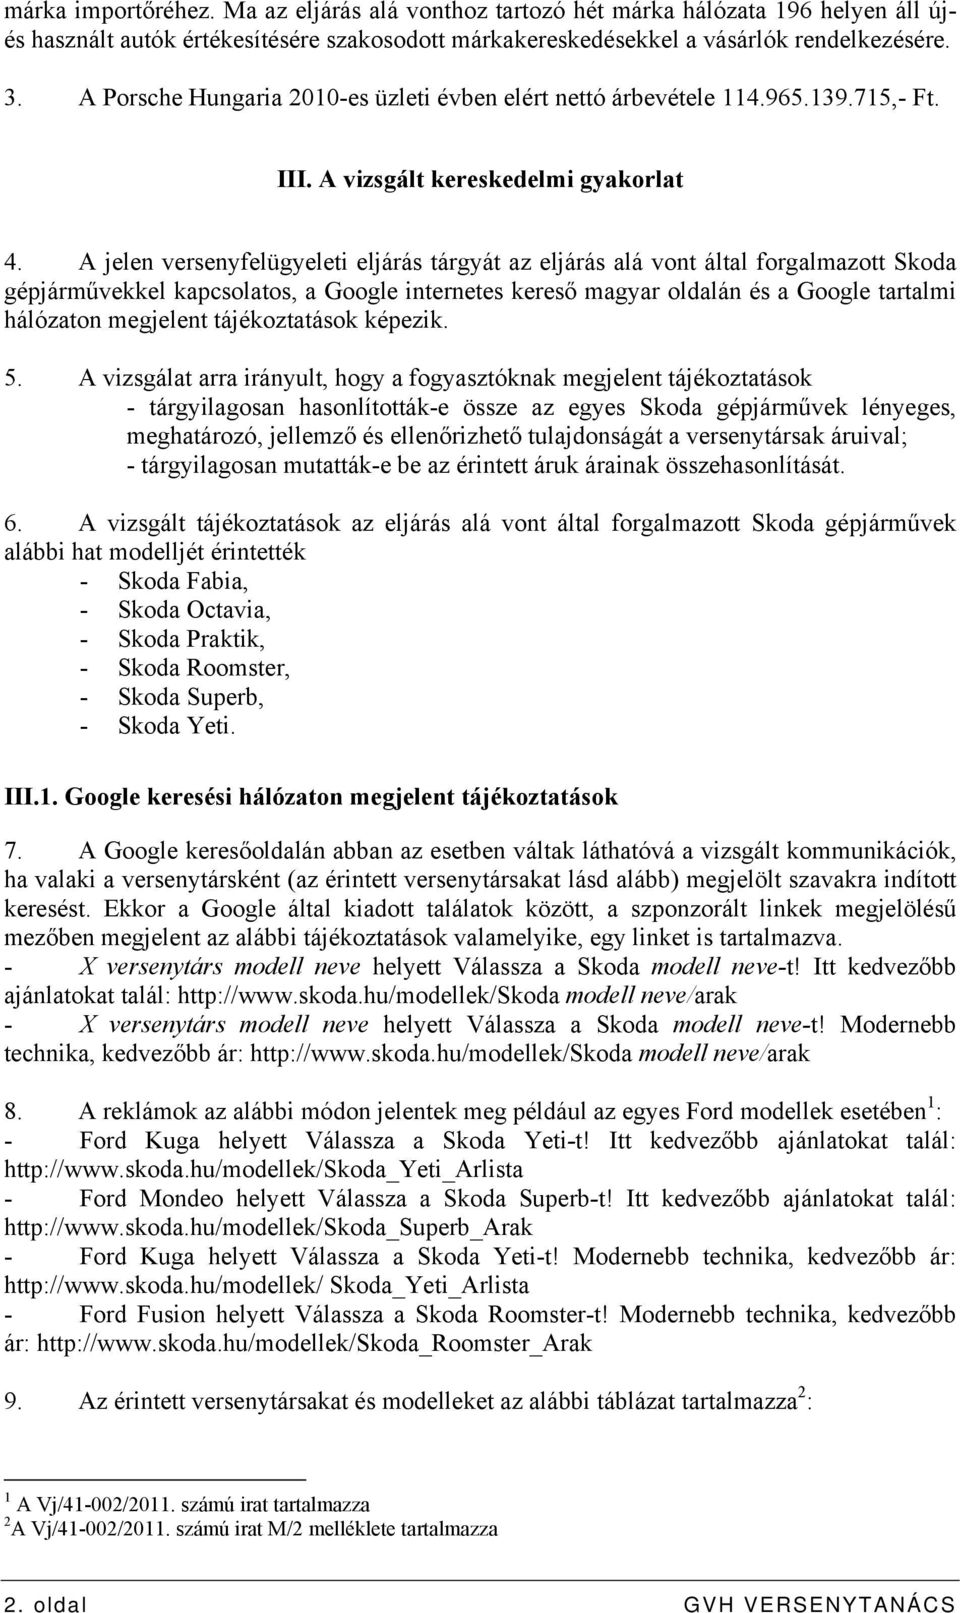 A jelen versenyfelügyeleti eljárás tárgyát az eljárás alá vont által forgalmazott Skoda gépjárművekkel kapcsolatos, a Google internetes kereső magyar oldalán és a Google tartalmi hálózaton megjelent